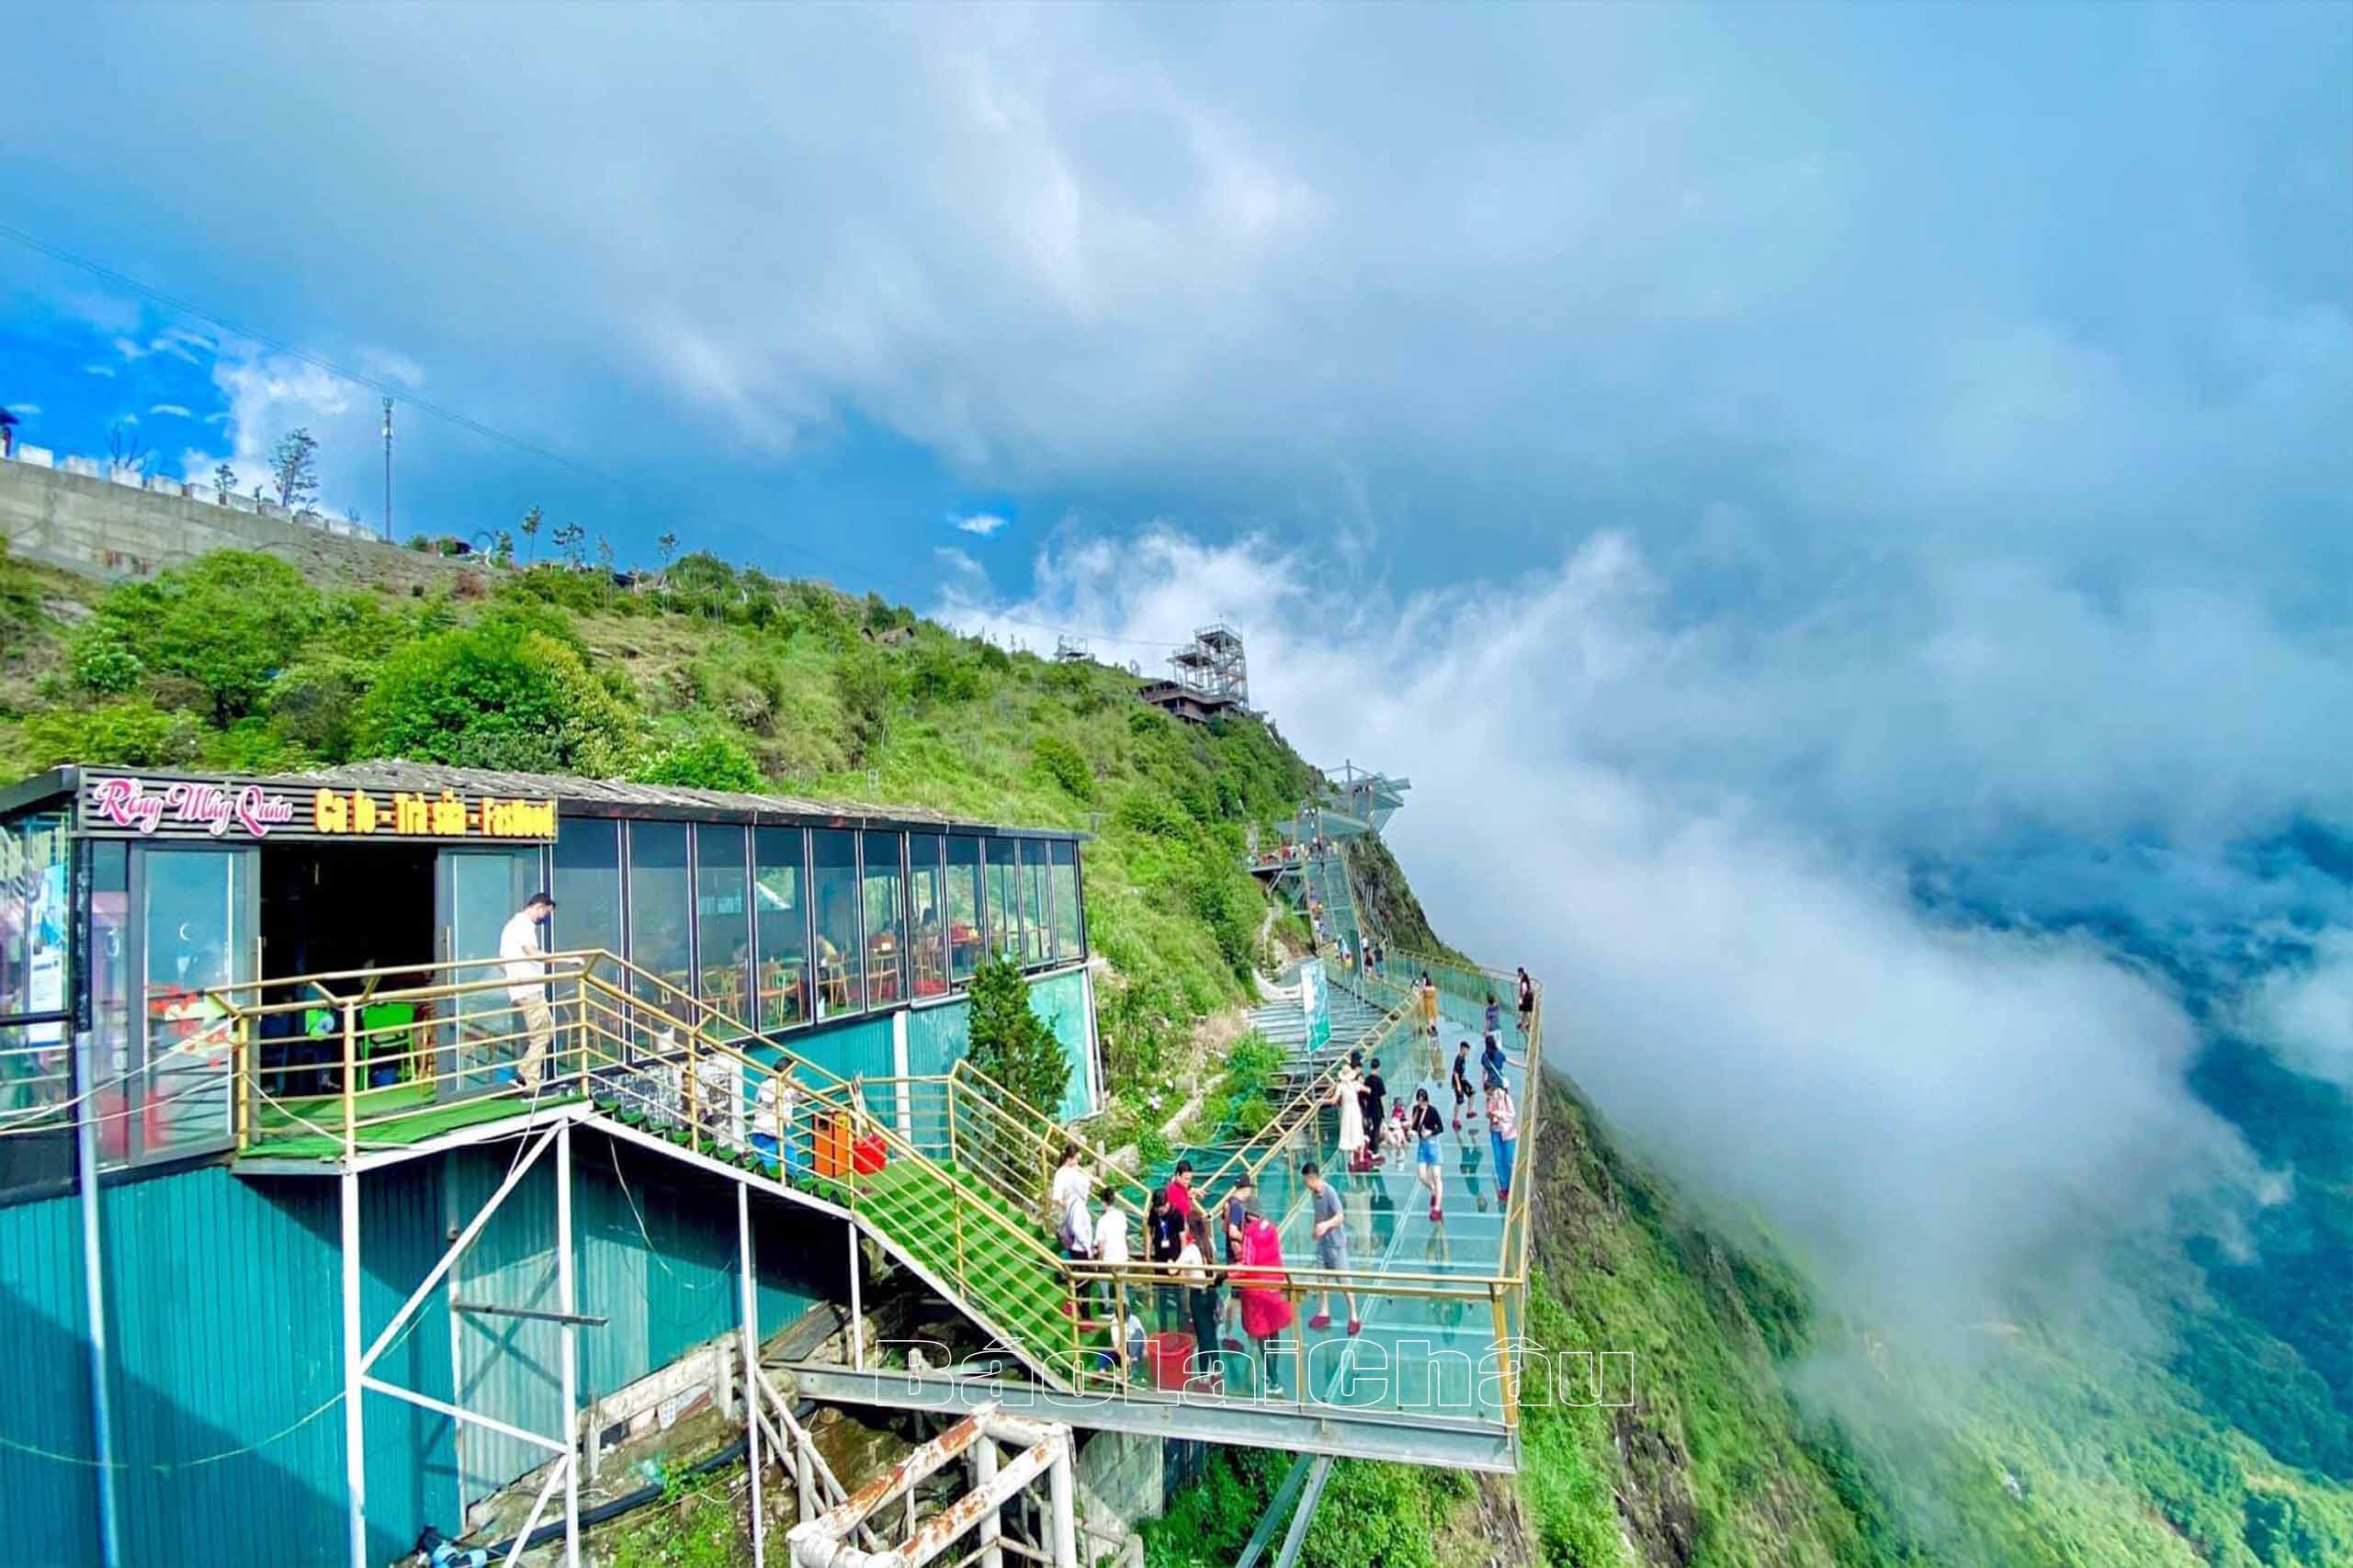 Khu du lịch Cầu kính Rồng Mây thu hút đông đảo khách du lịch trong và ngoài nước tới tham quan, trải nghiệm.